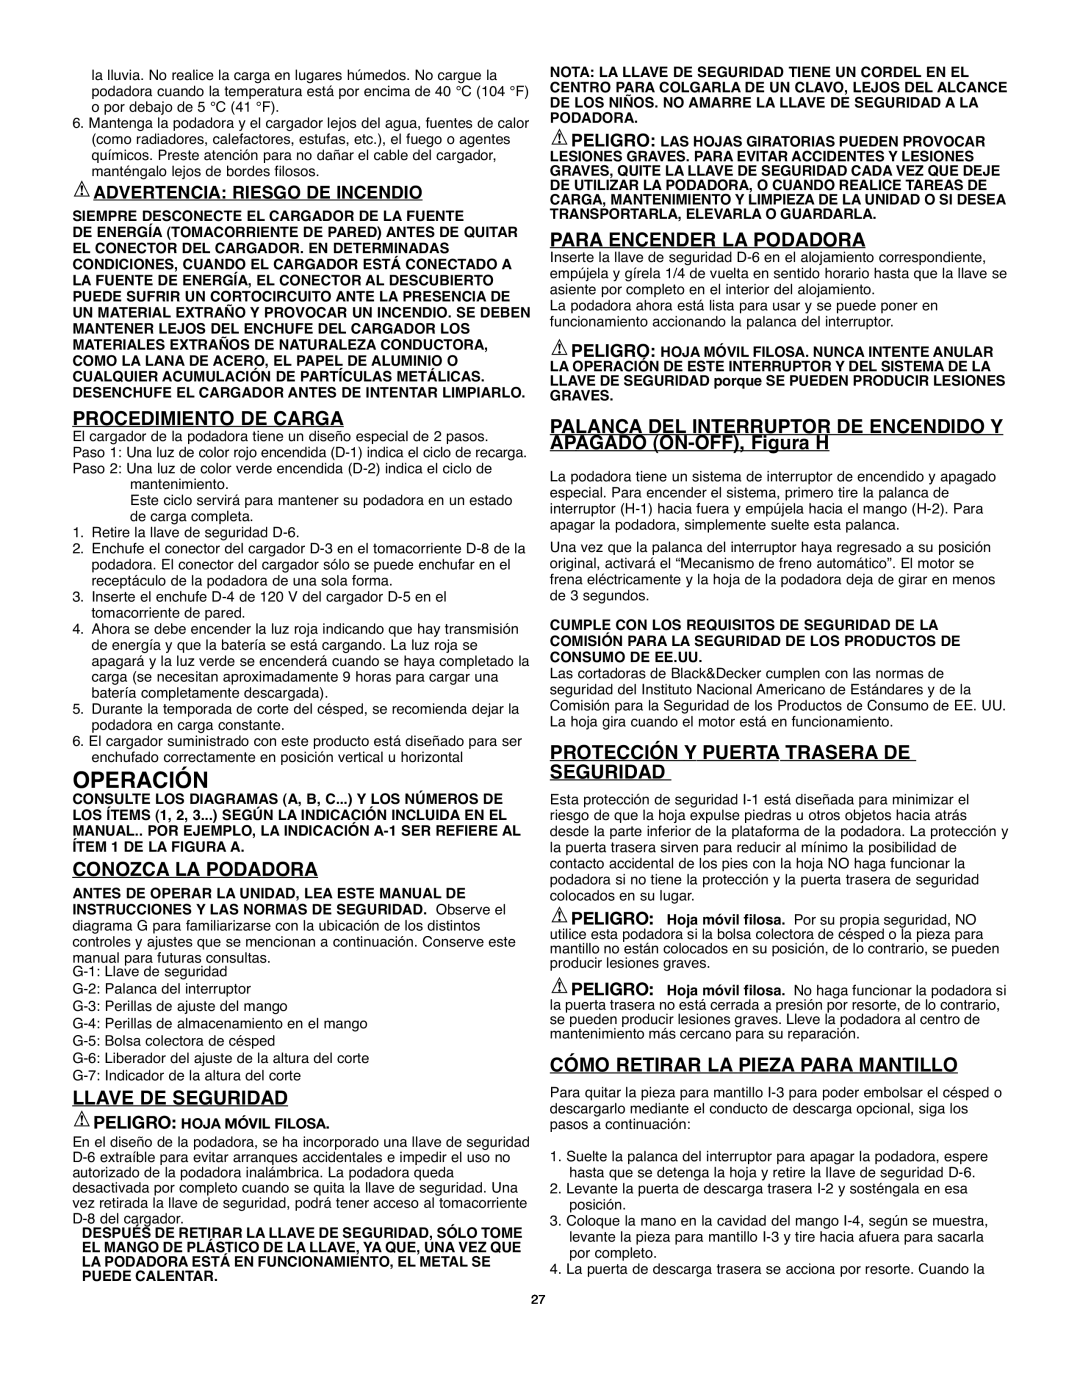 Black & Decker 90514757 instruction manual Operación, Procedimiento De Carga, Conozca La Podadora, Llave De Seguridad 